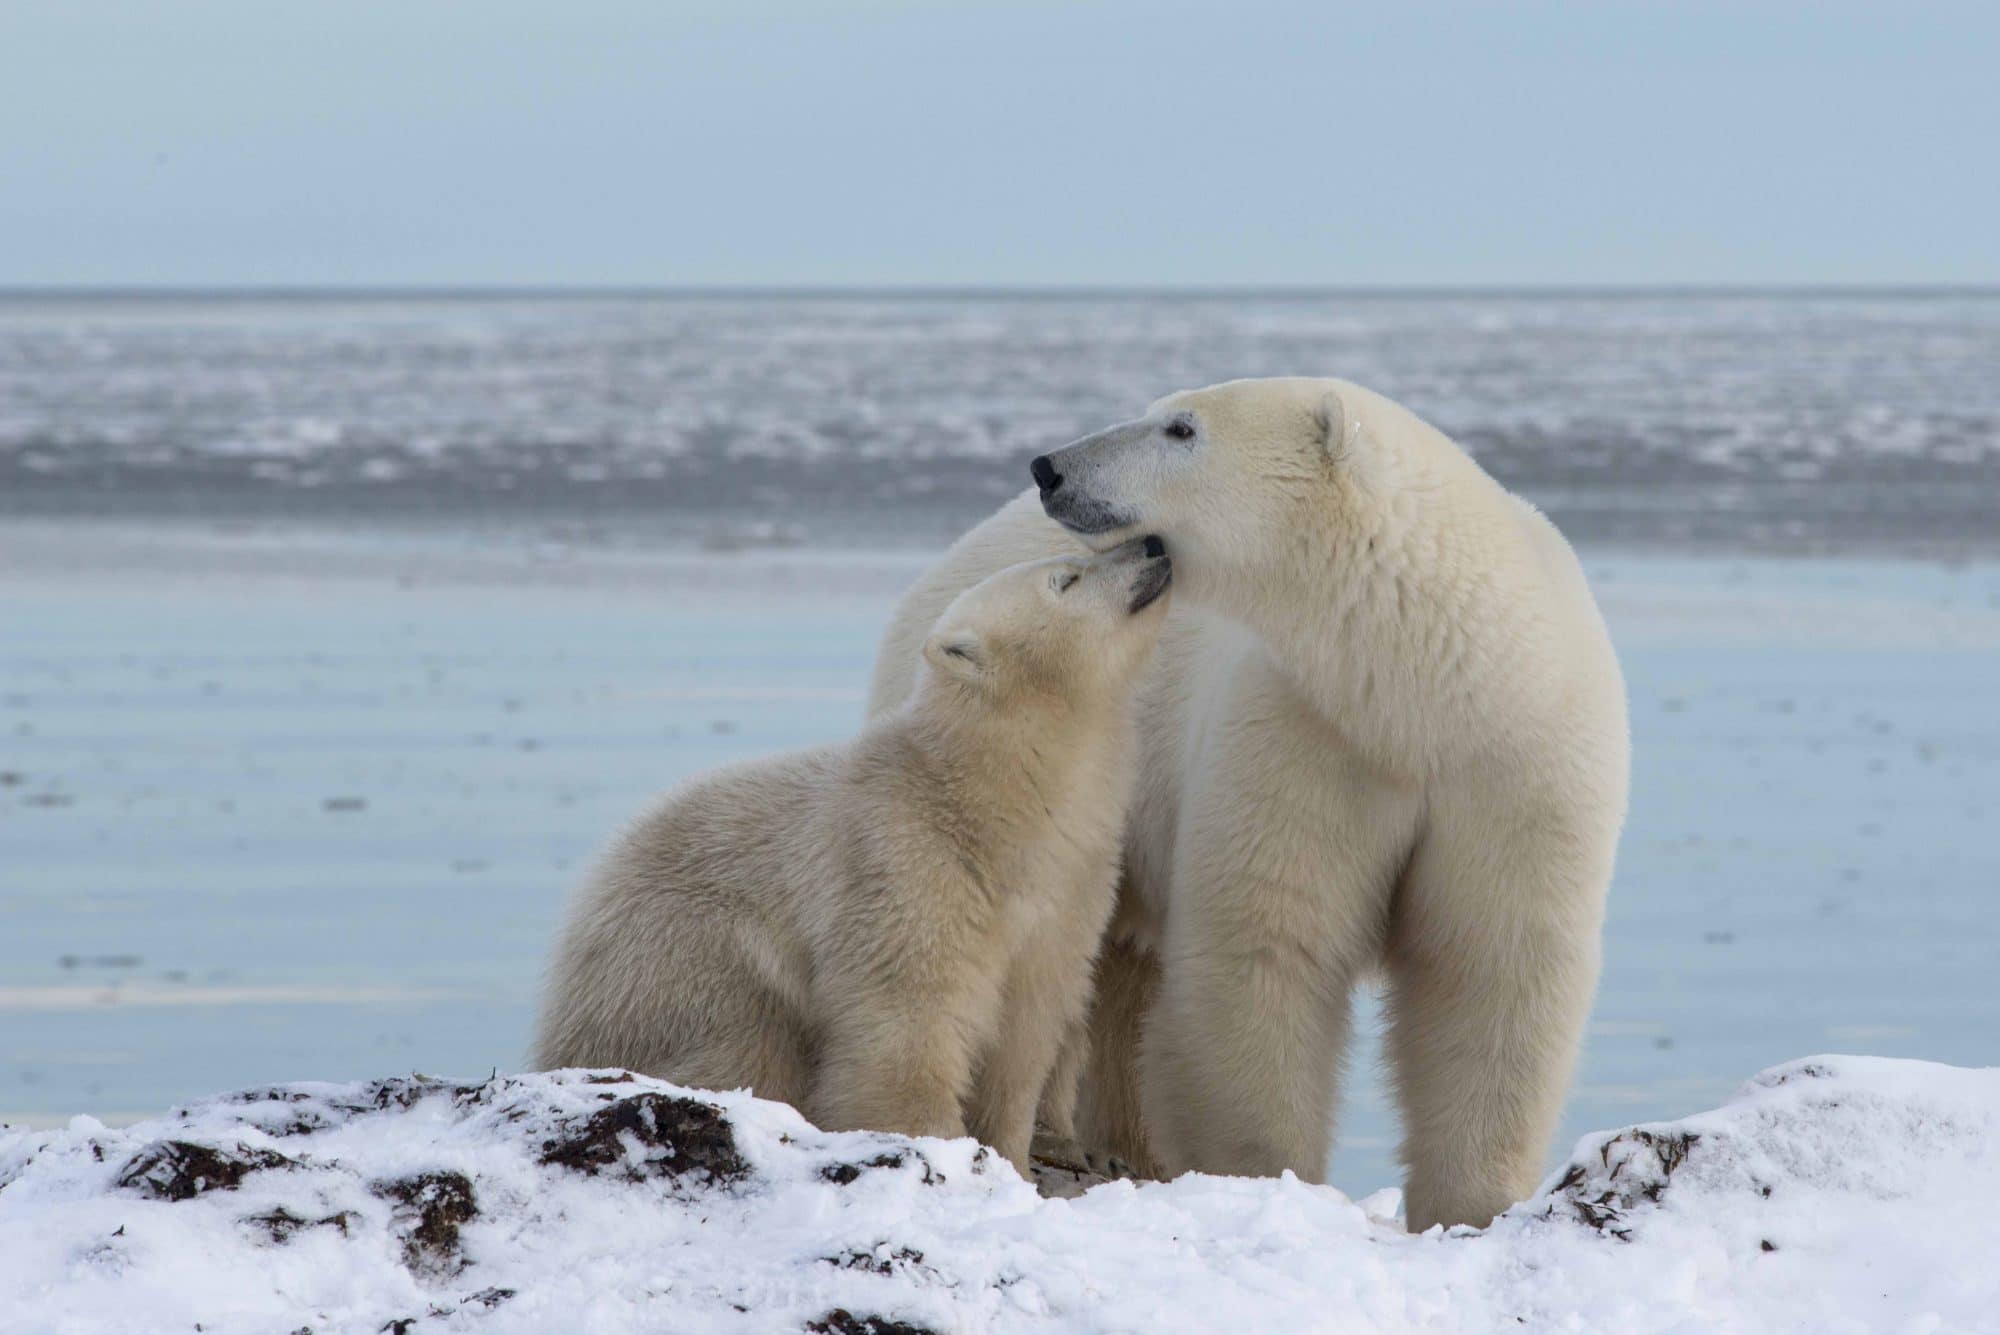 Lire la suite à propos de l’article Rencontre exceptionnelle avec des ours polaires dans la Hudson Bay